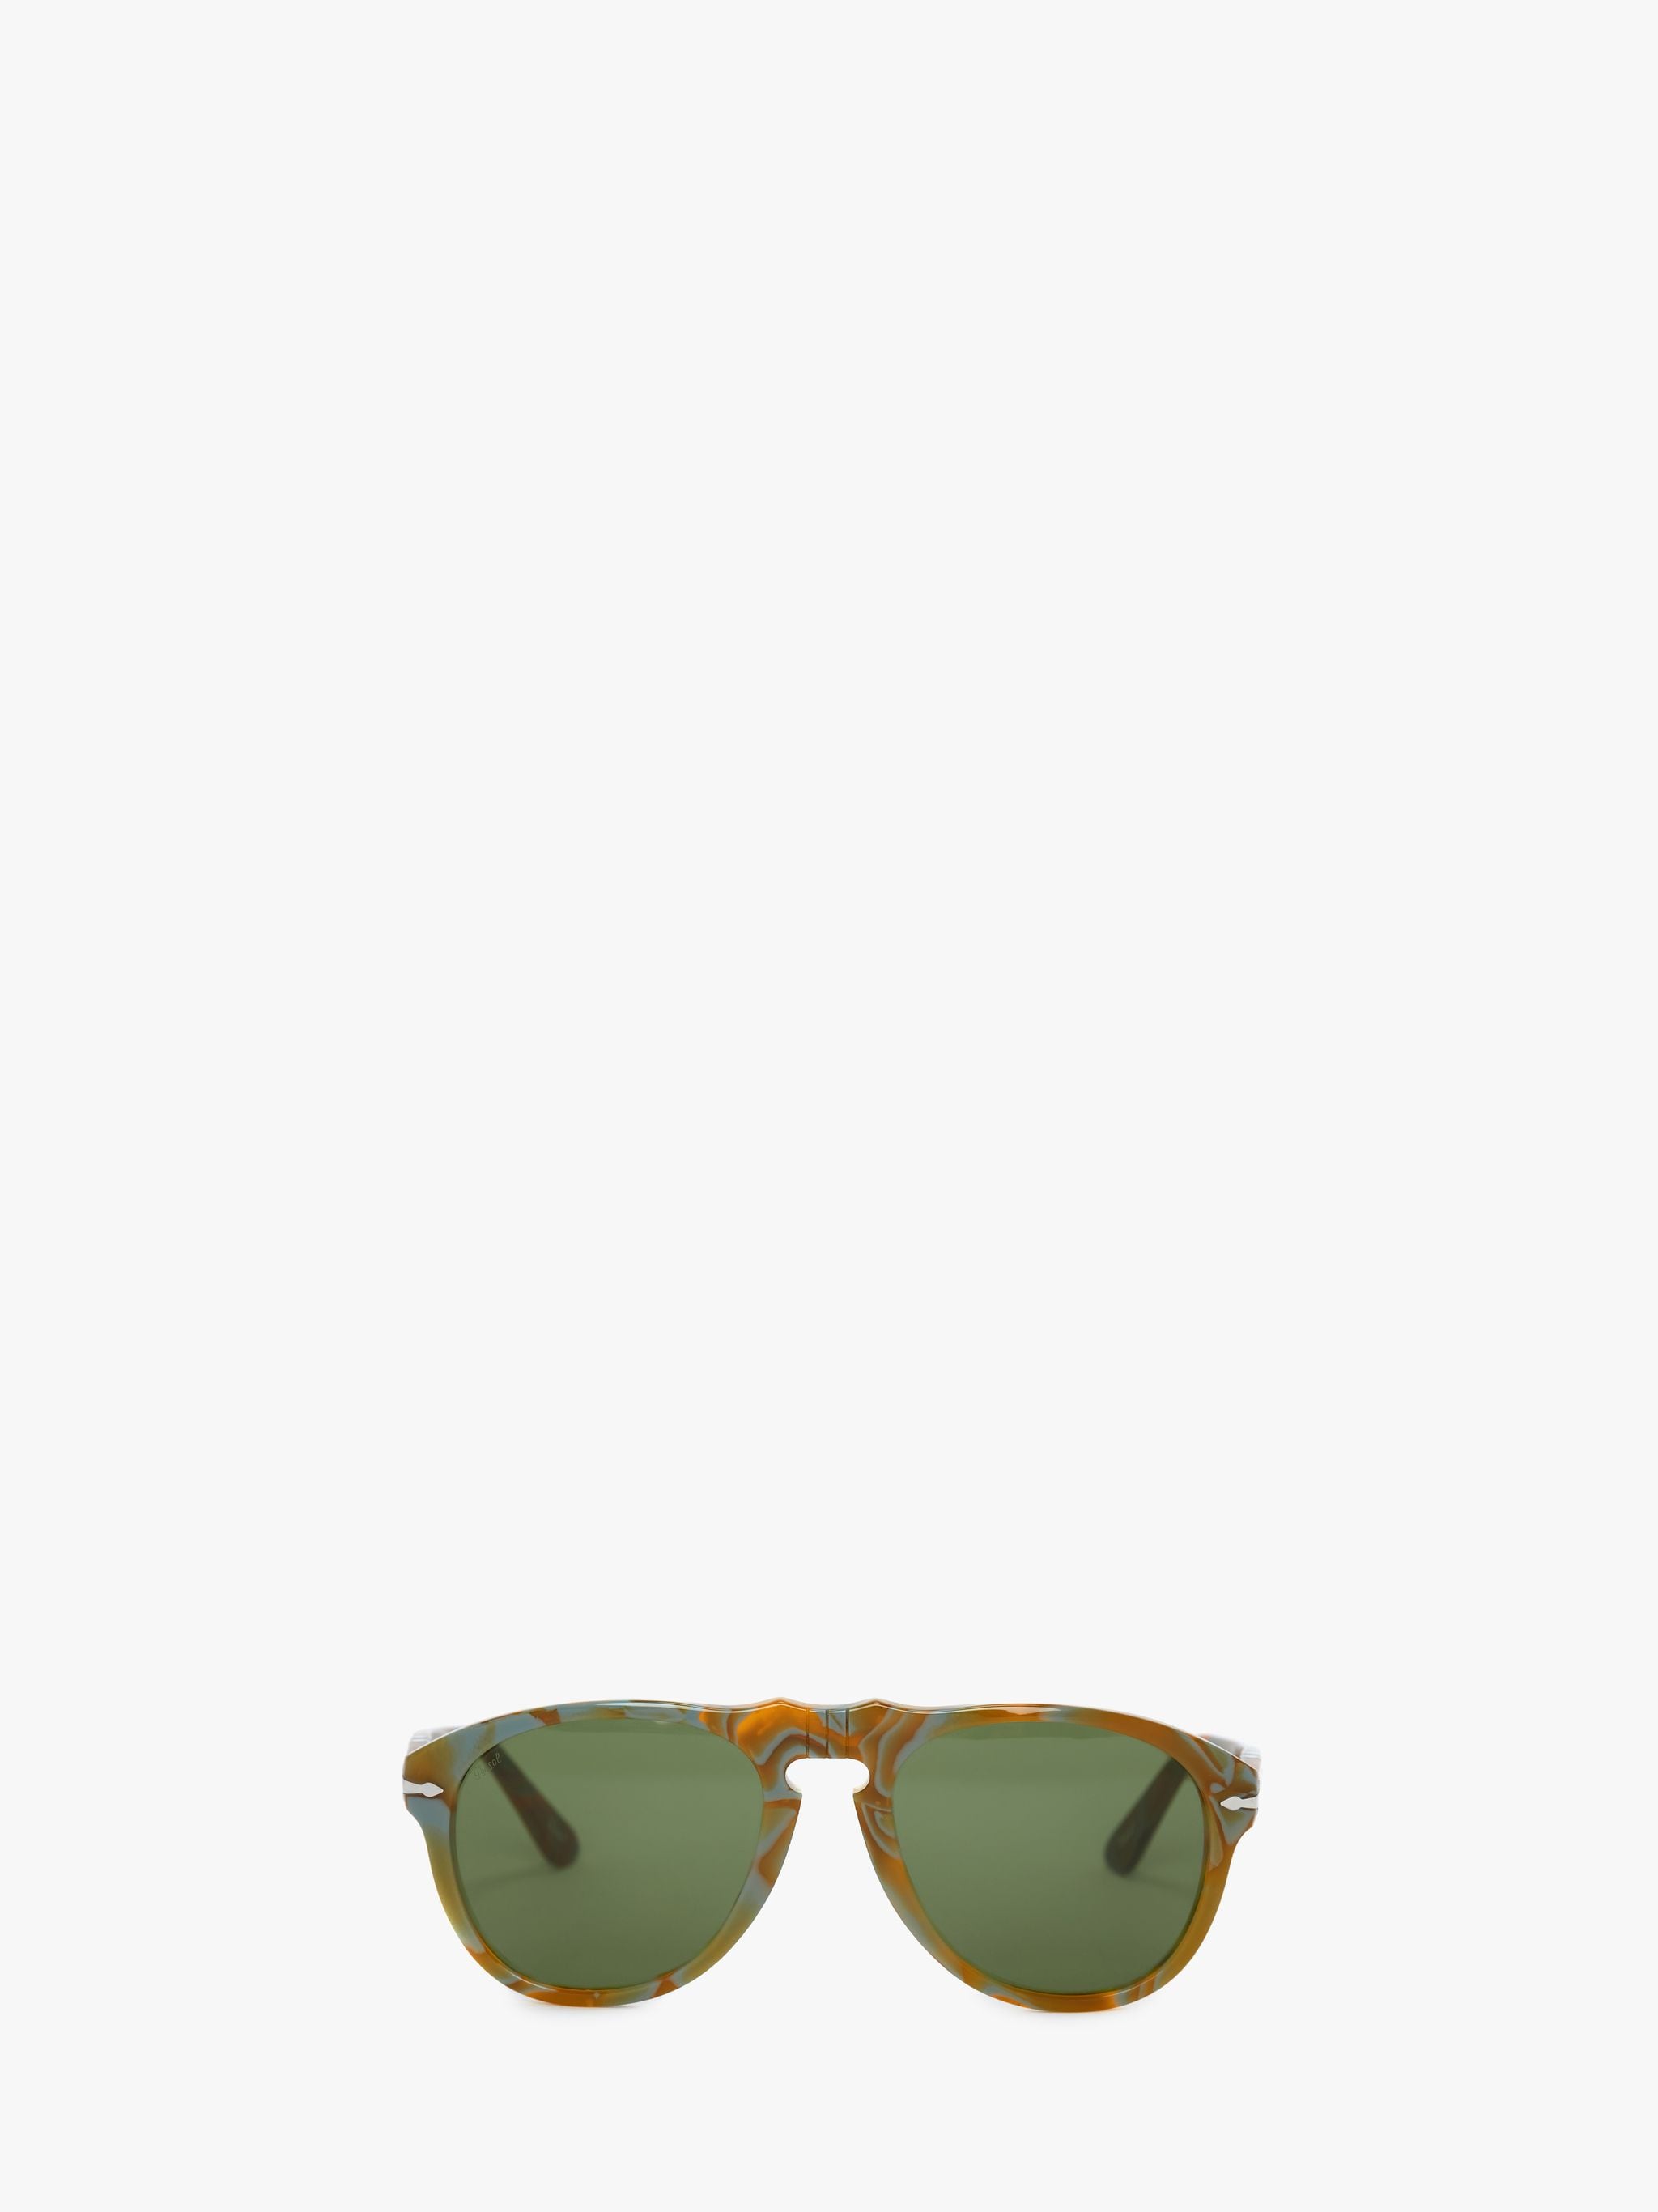 Солнцезащитные очки - авиатор JW Anderson, зеленый солнцезащитные очки авиаторы оправа металл